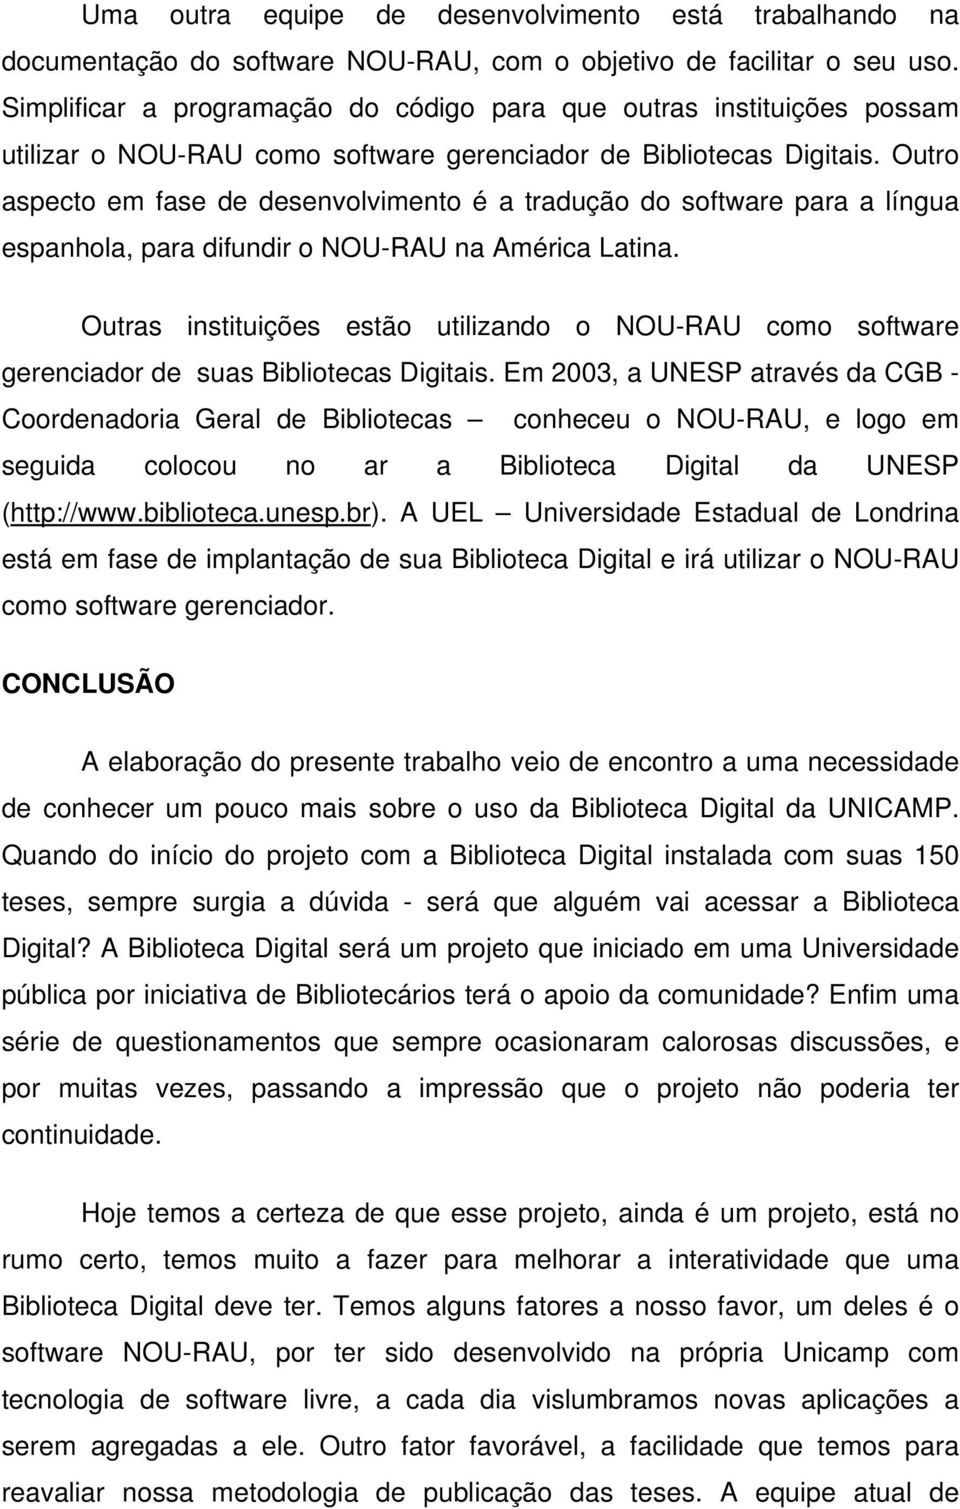 Outro aspecto em fase de desenvolvimento é a tradução do software para a língua espanhola, para difundir o NOU-RAU na América Latina.